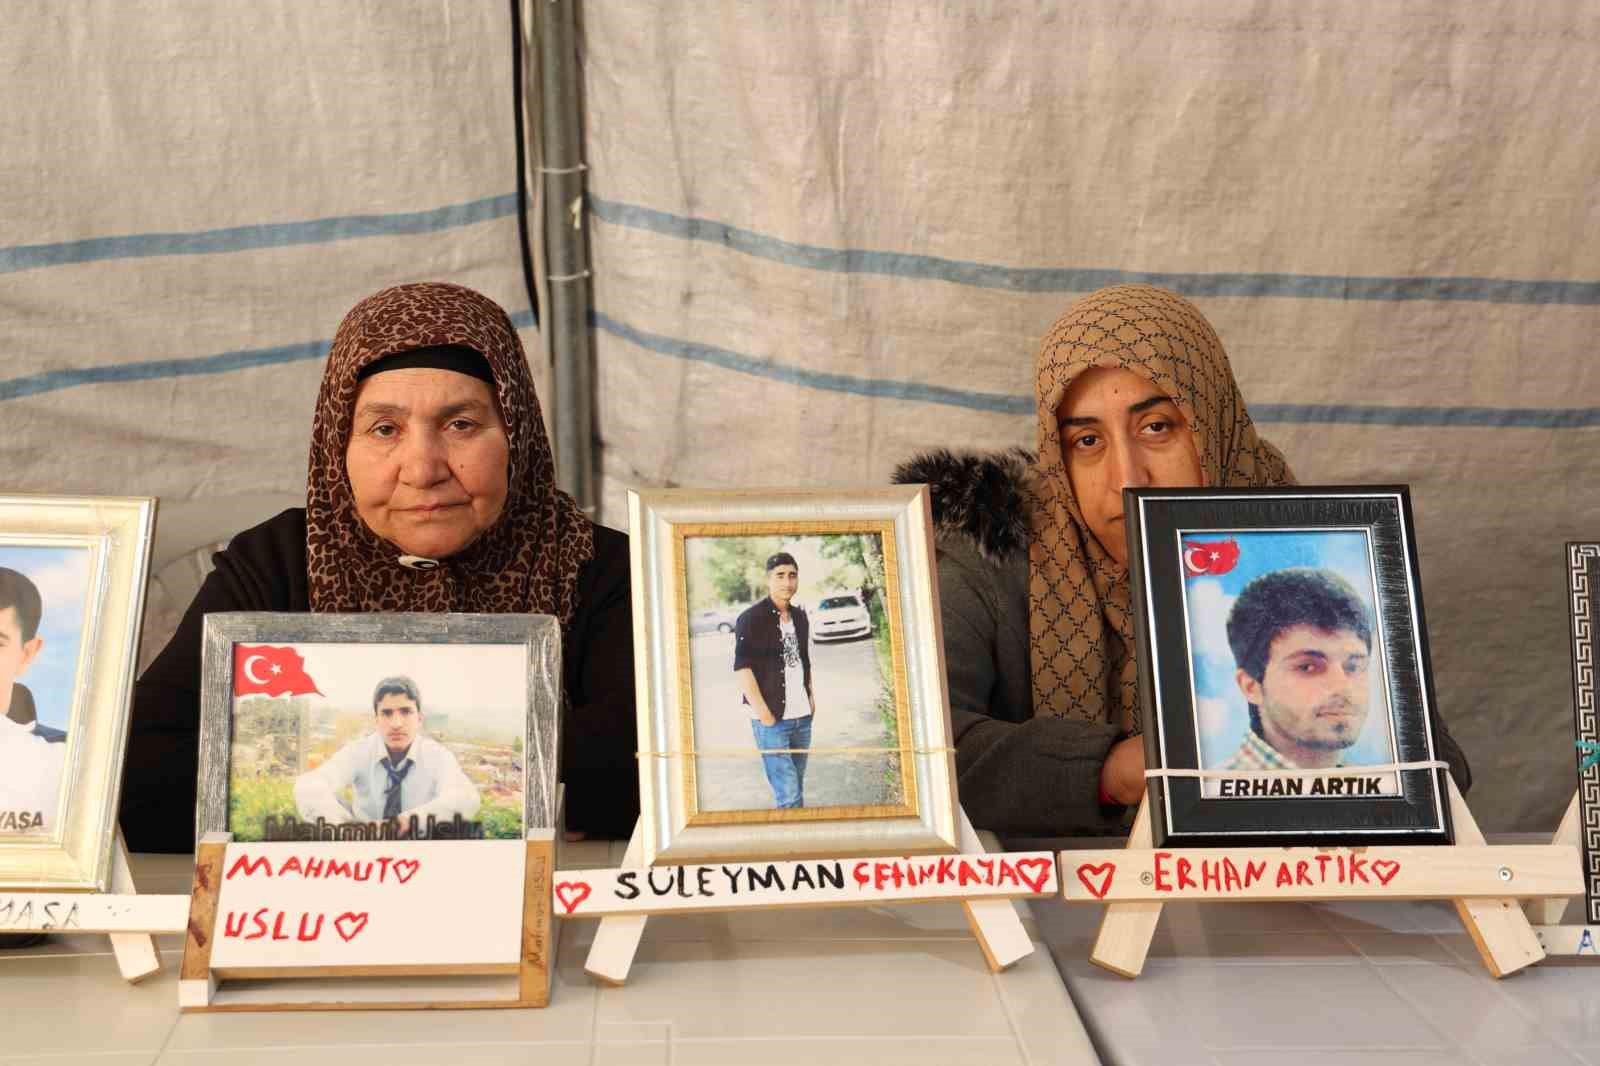 Diyarbakır anneleri evlatlarının yolunu umutla gözlüyor
